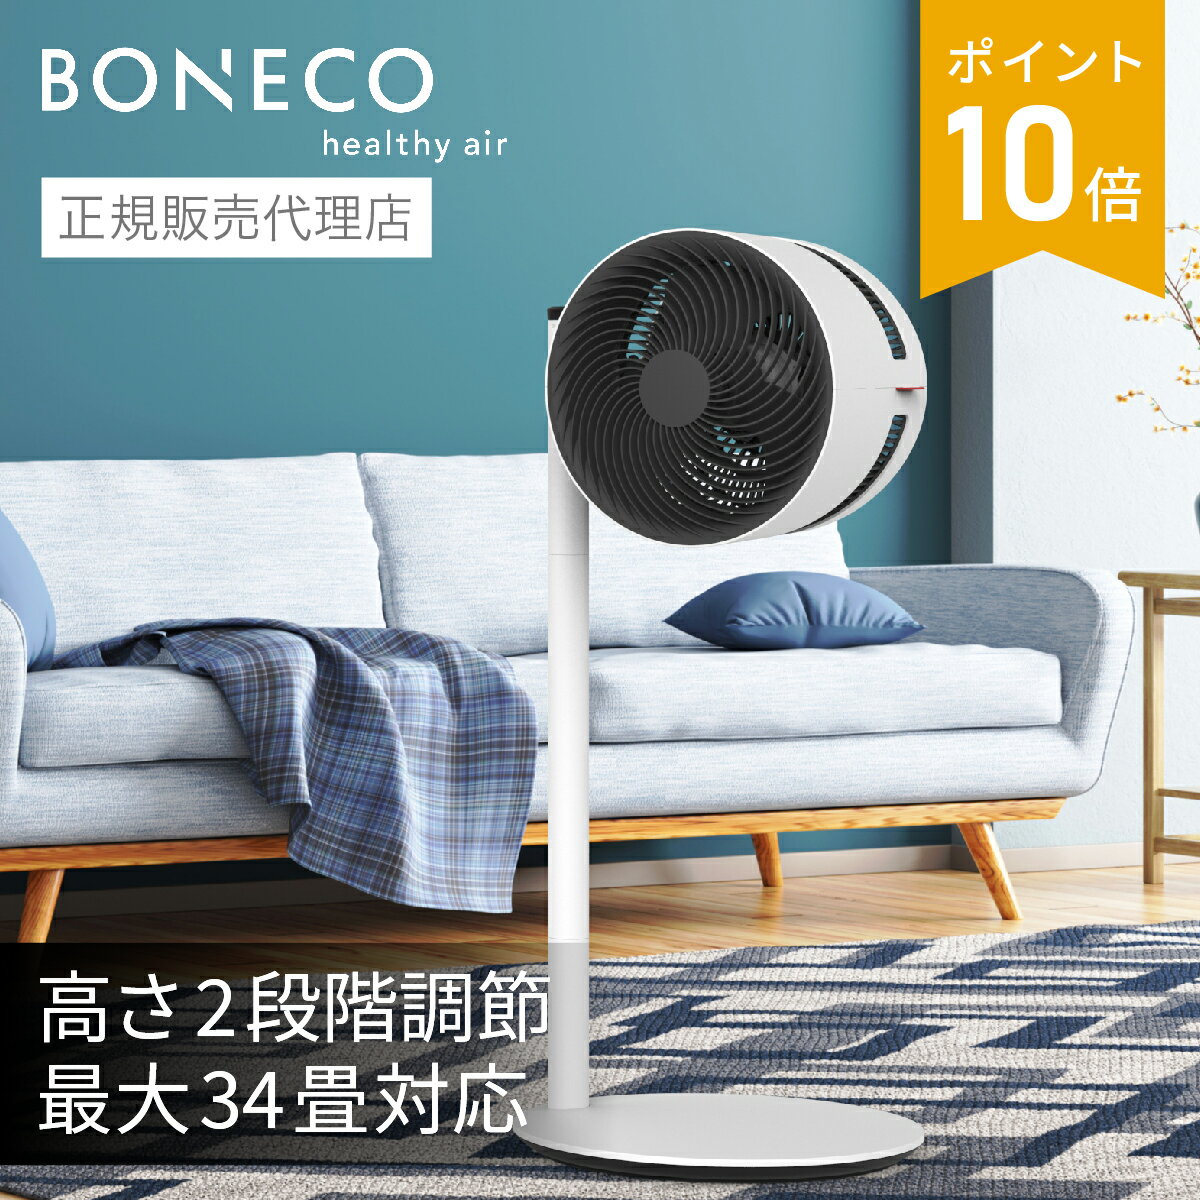 BONECO AIR SHOWER FAN サーキュレーター F220 | 扇風機 送風機 静音 34畳 おしゃれ デザイン シンプル 北欧 白 ホワイト | BONECO ボネコ シロカ